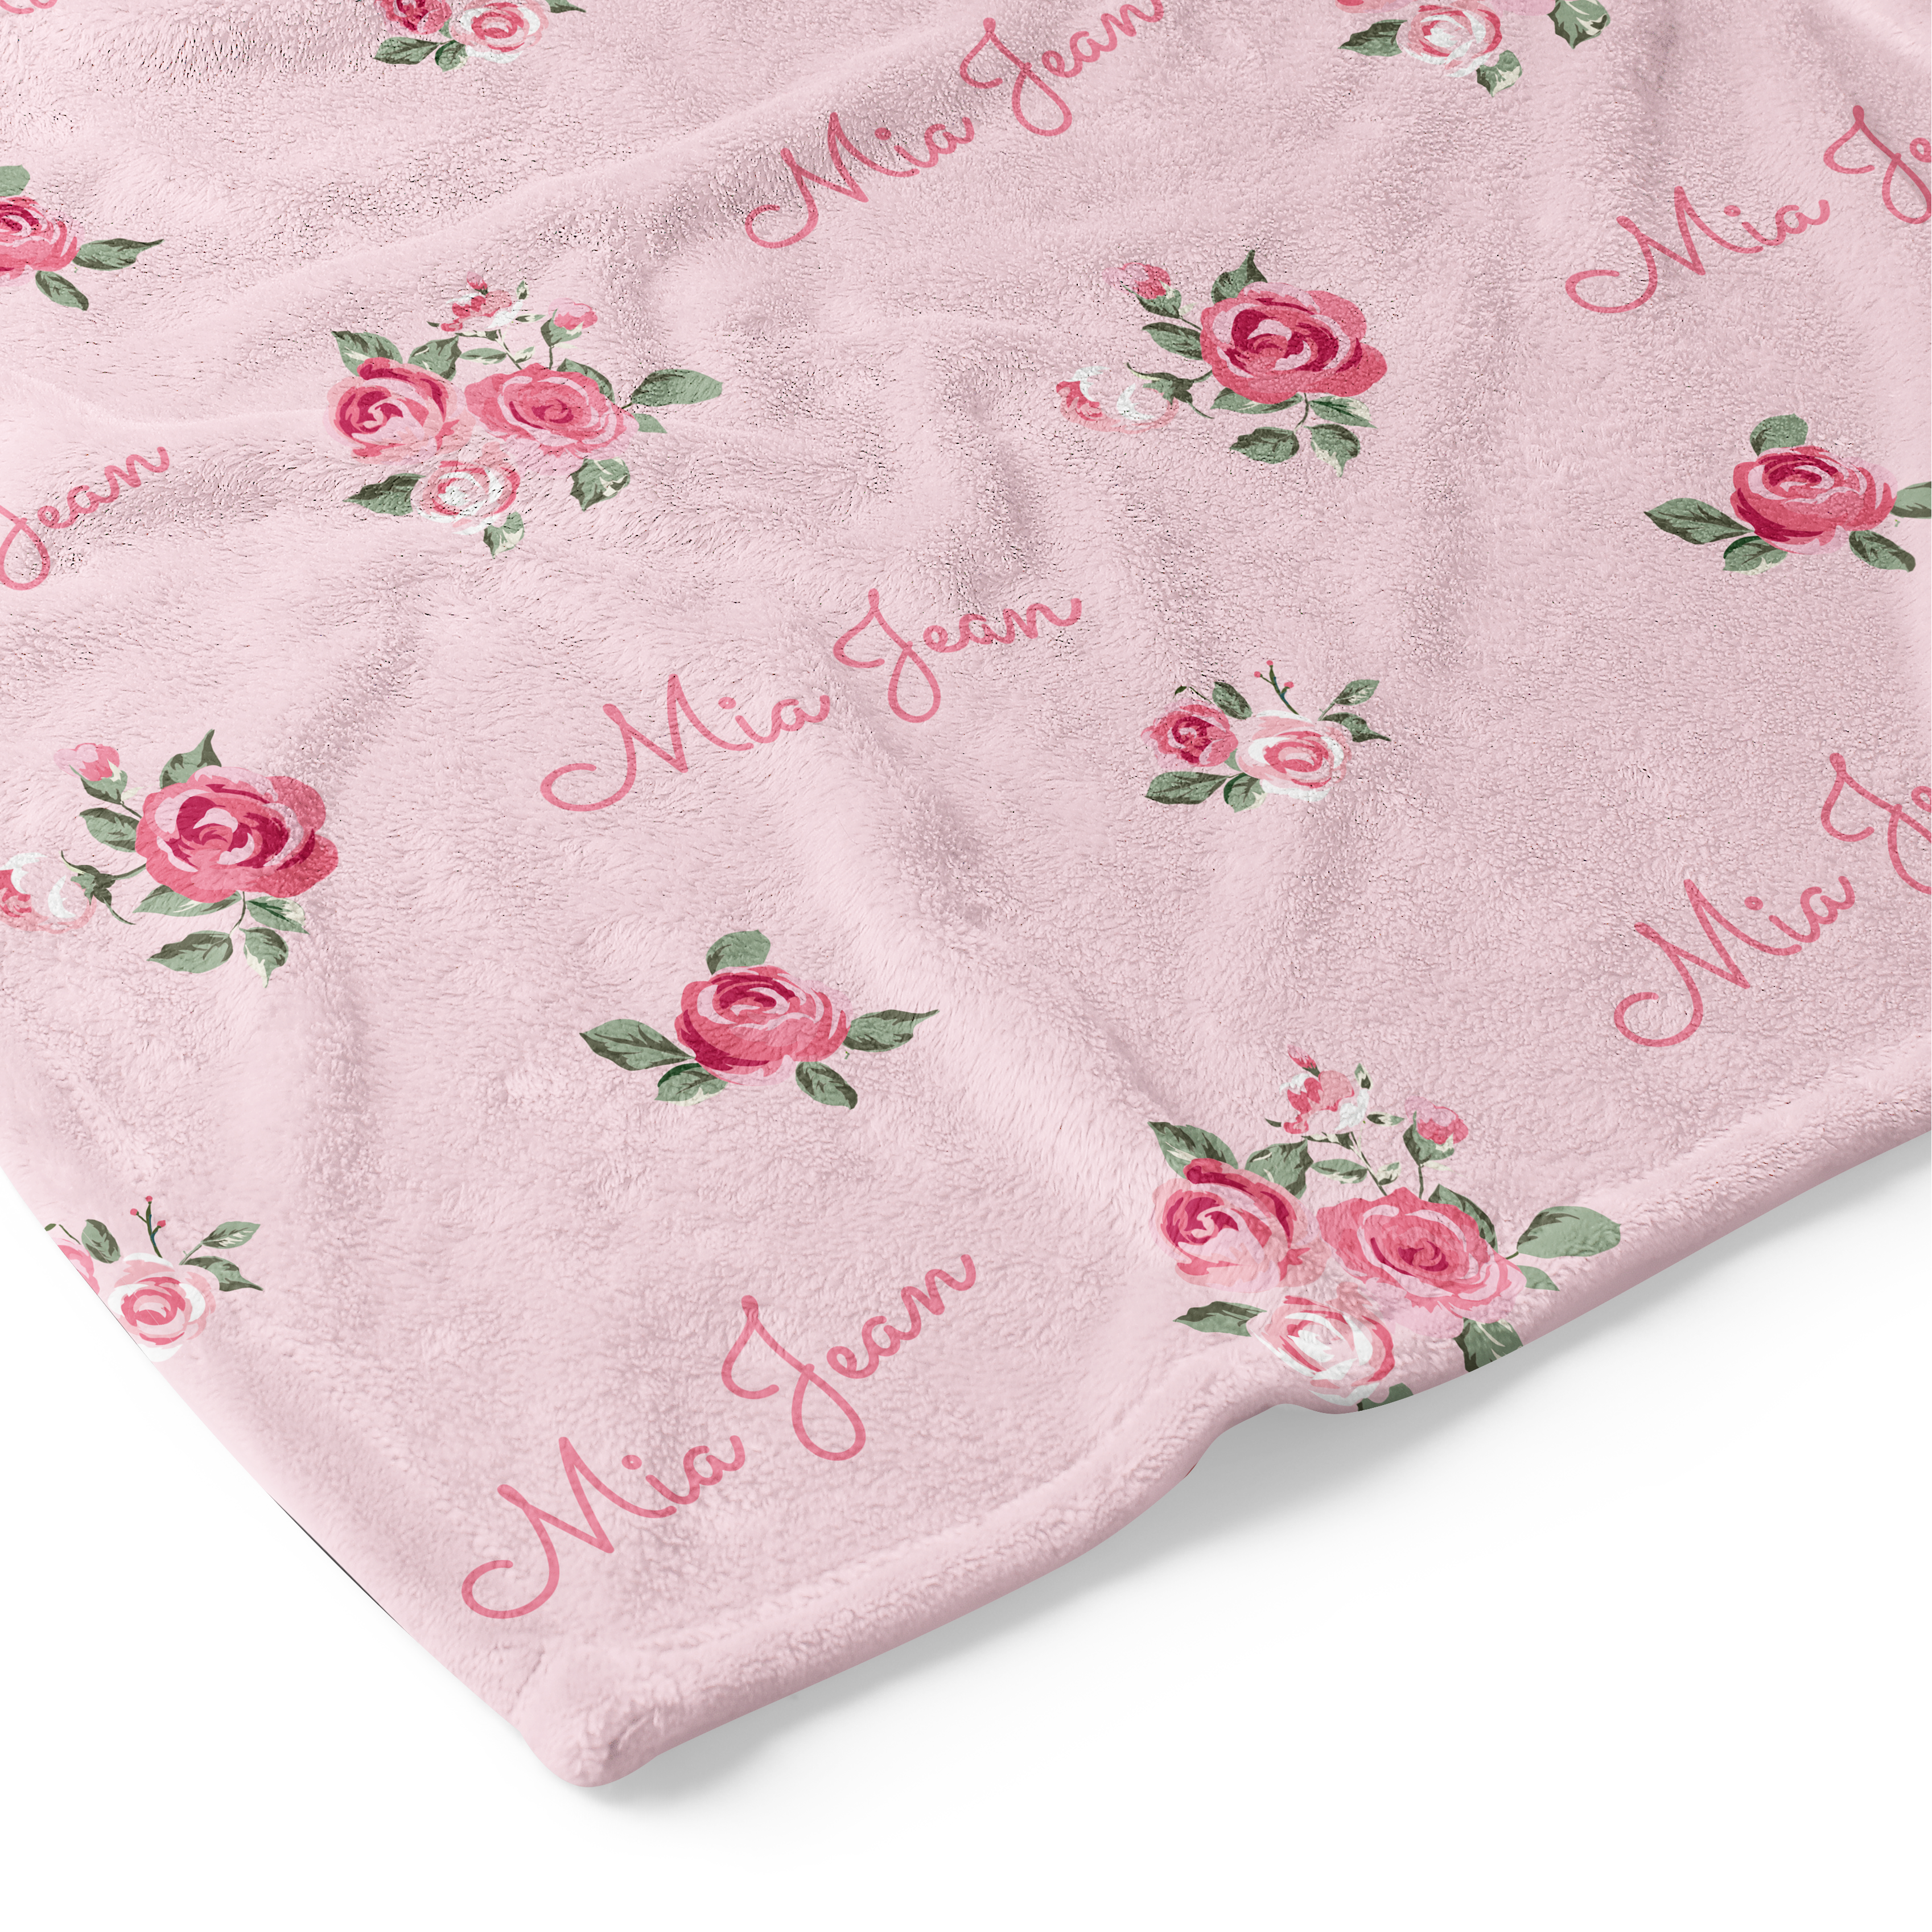 Rose Garden - Personalised Keepsake Blanket